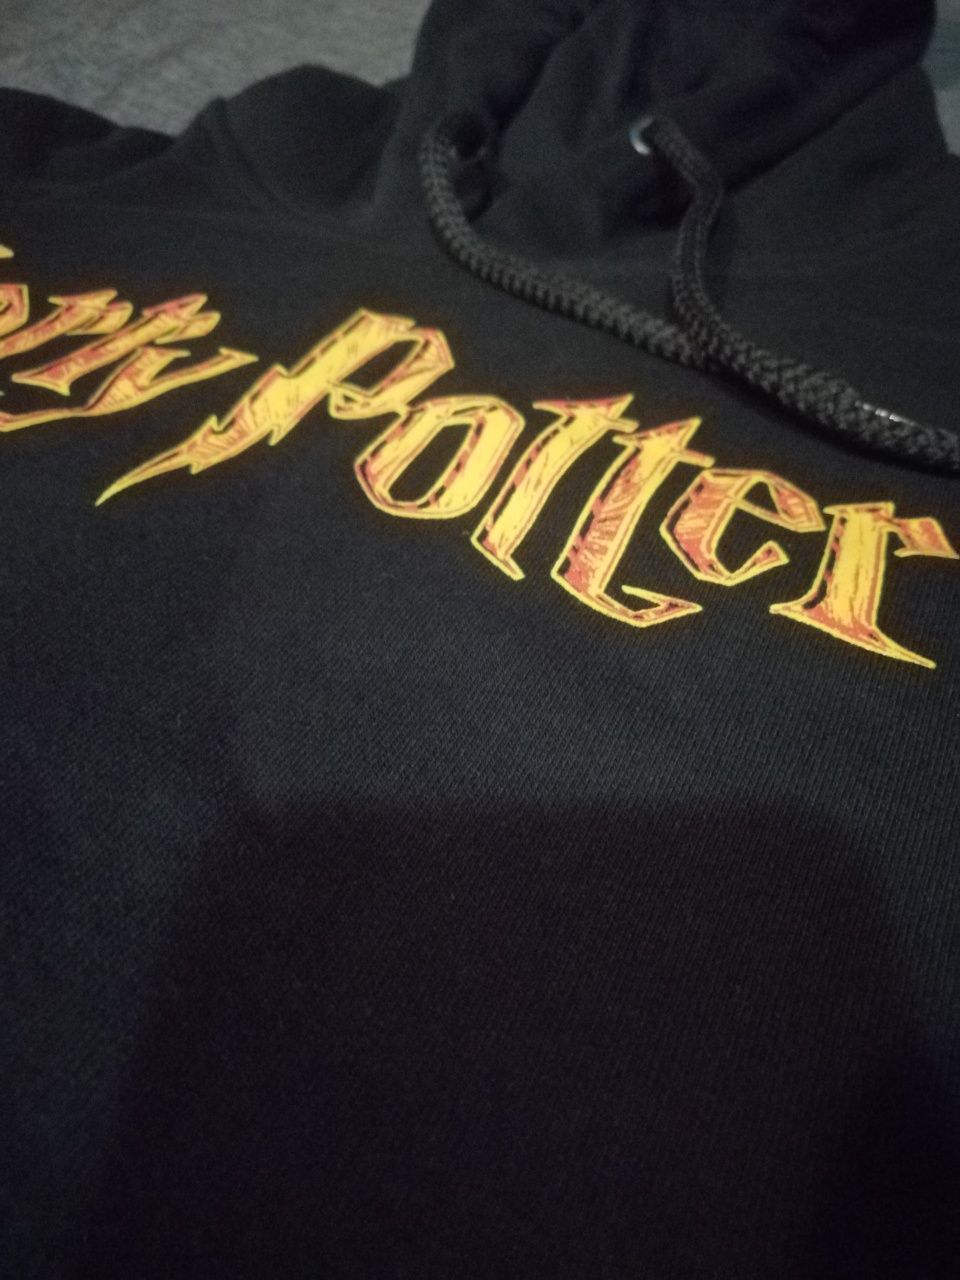 Nowa bluza Harry Potter xl